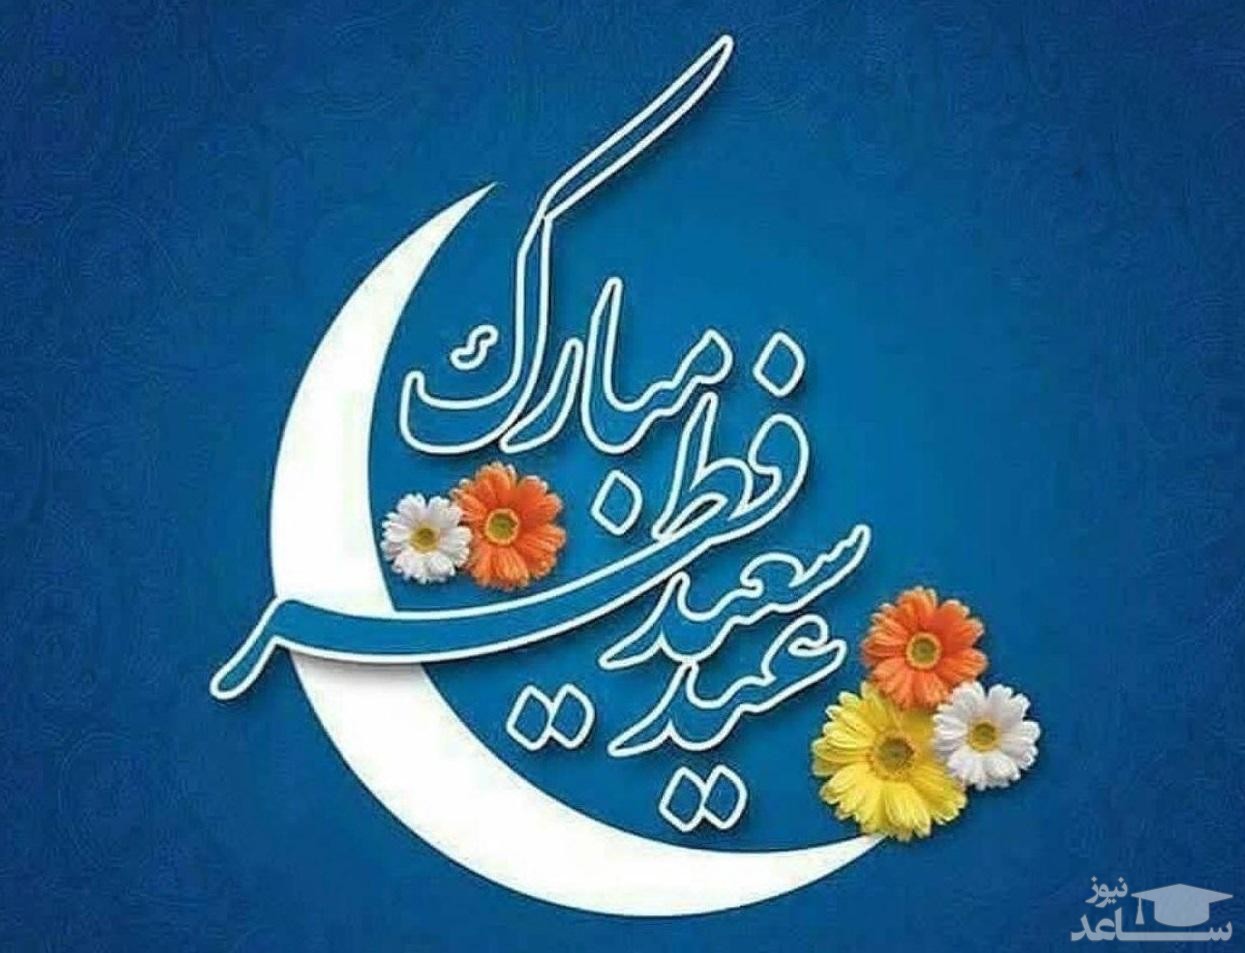 پوستر تبریک عید سعید فطر